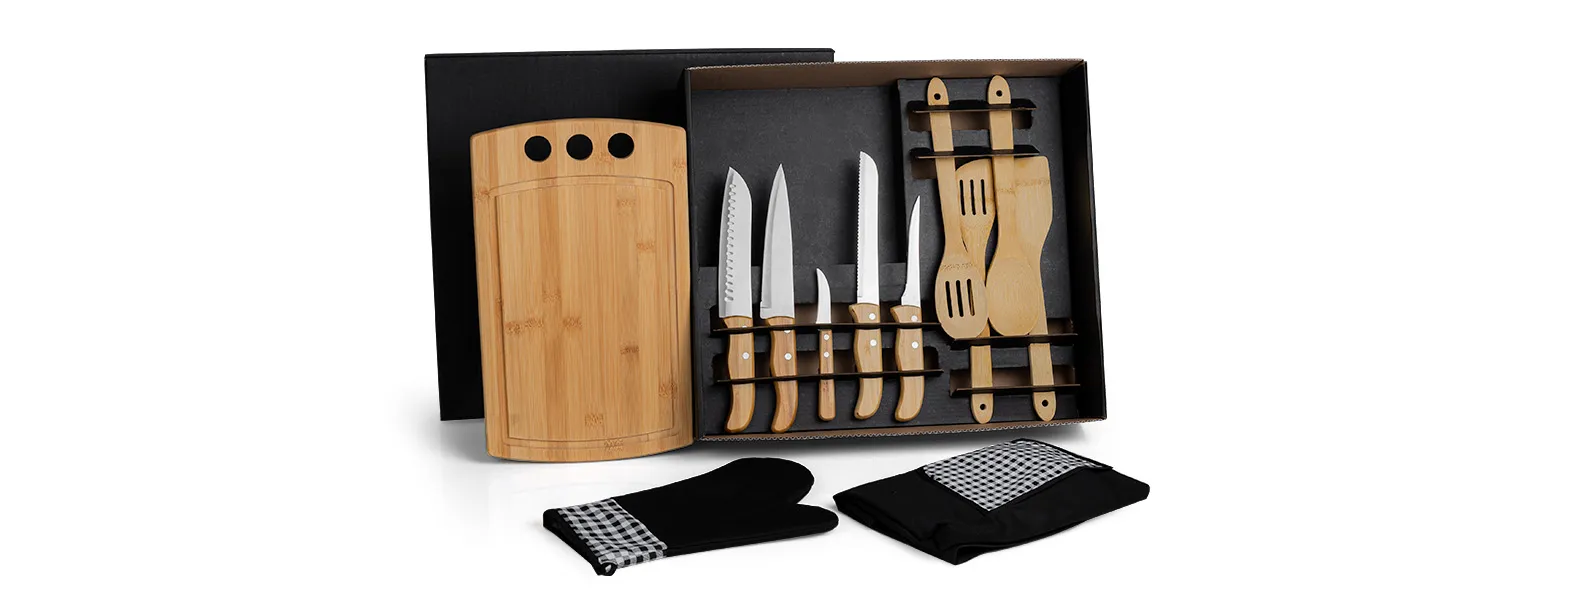 Conta com tábua, 4 utensílios em Bambu; faca 8, faca para pão; faca para desossar e faca para legumes em Bambu/Inox; luva e avental em Brim.